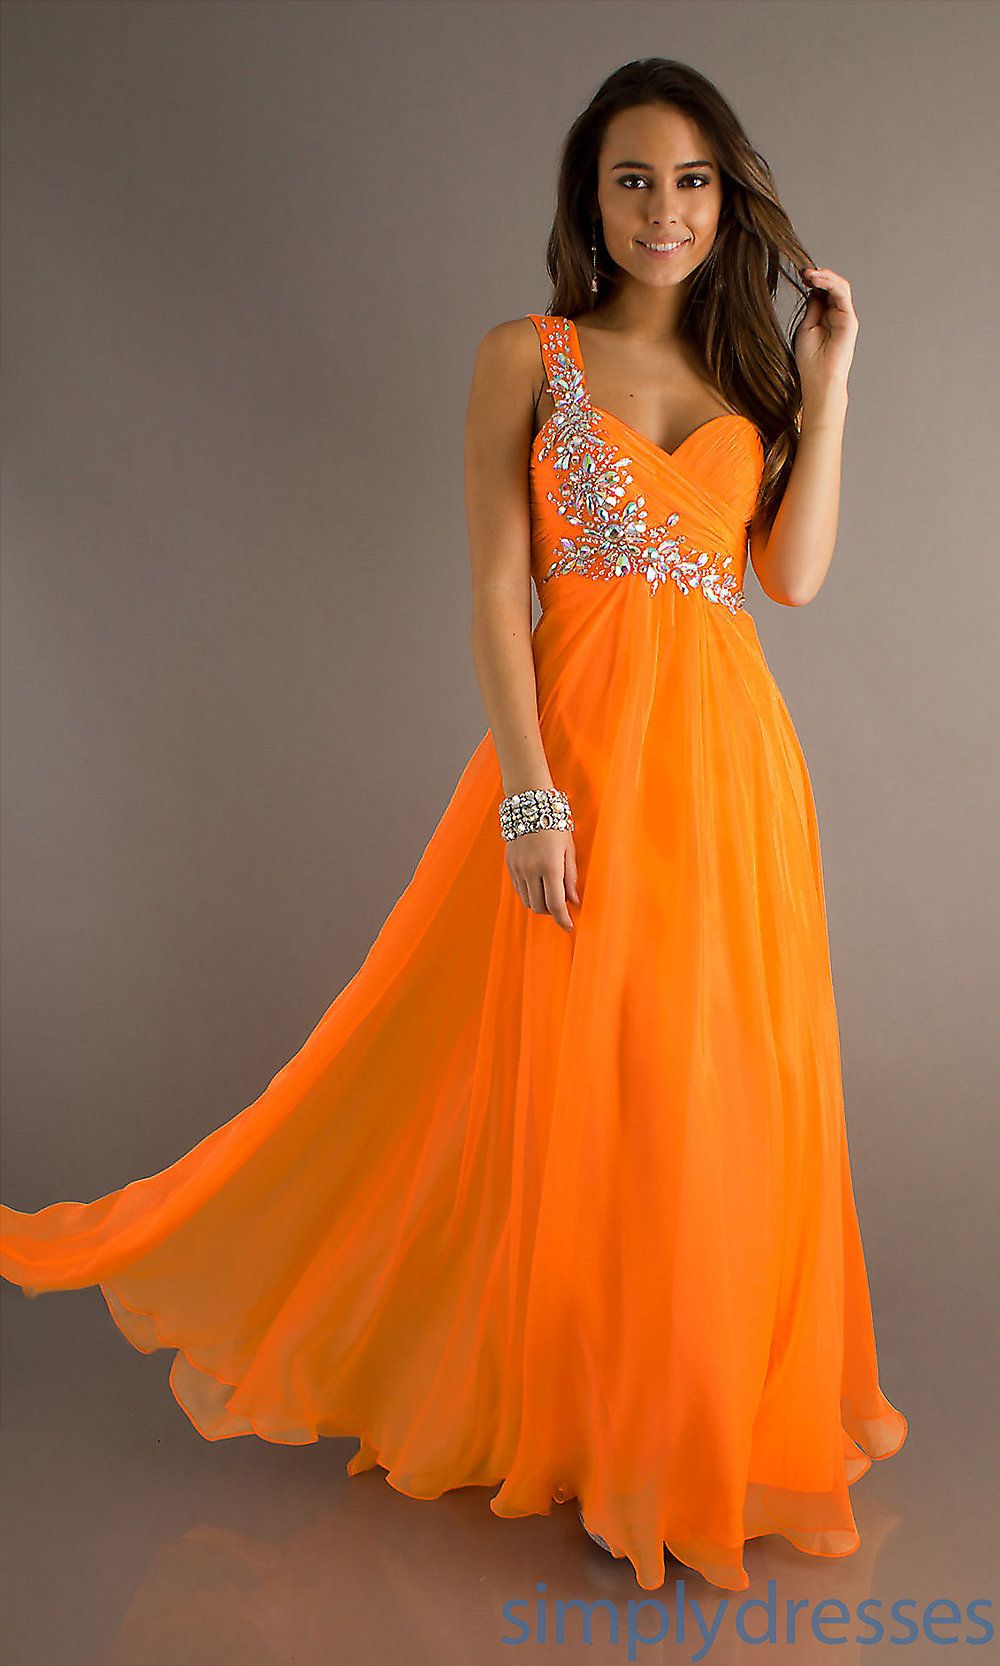 elegant orange dresses photo - 1